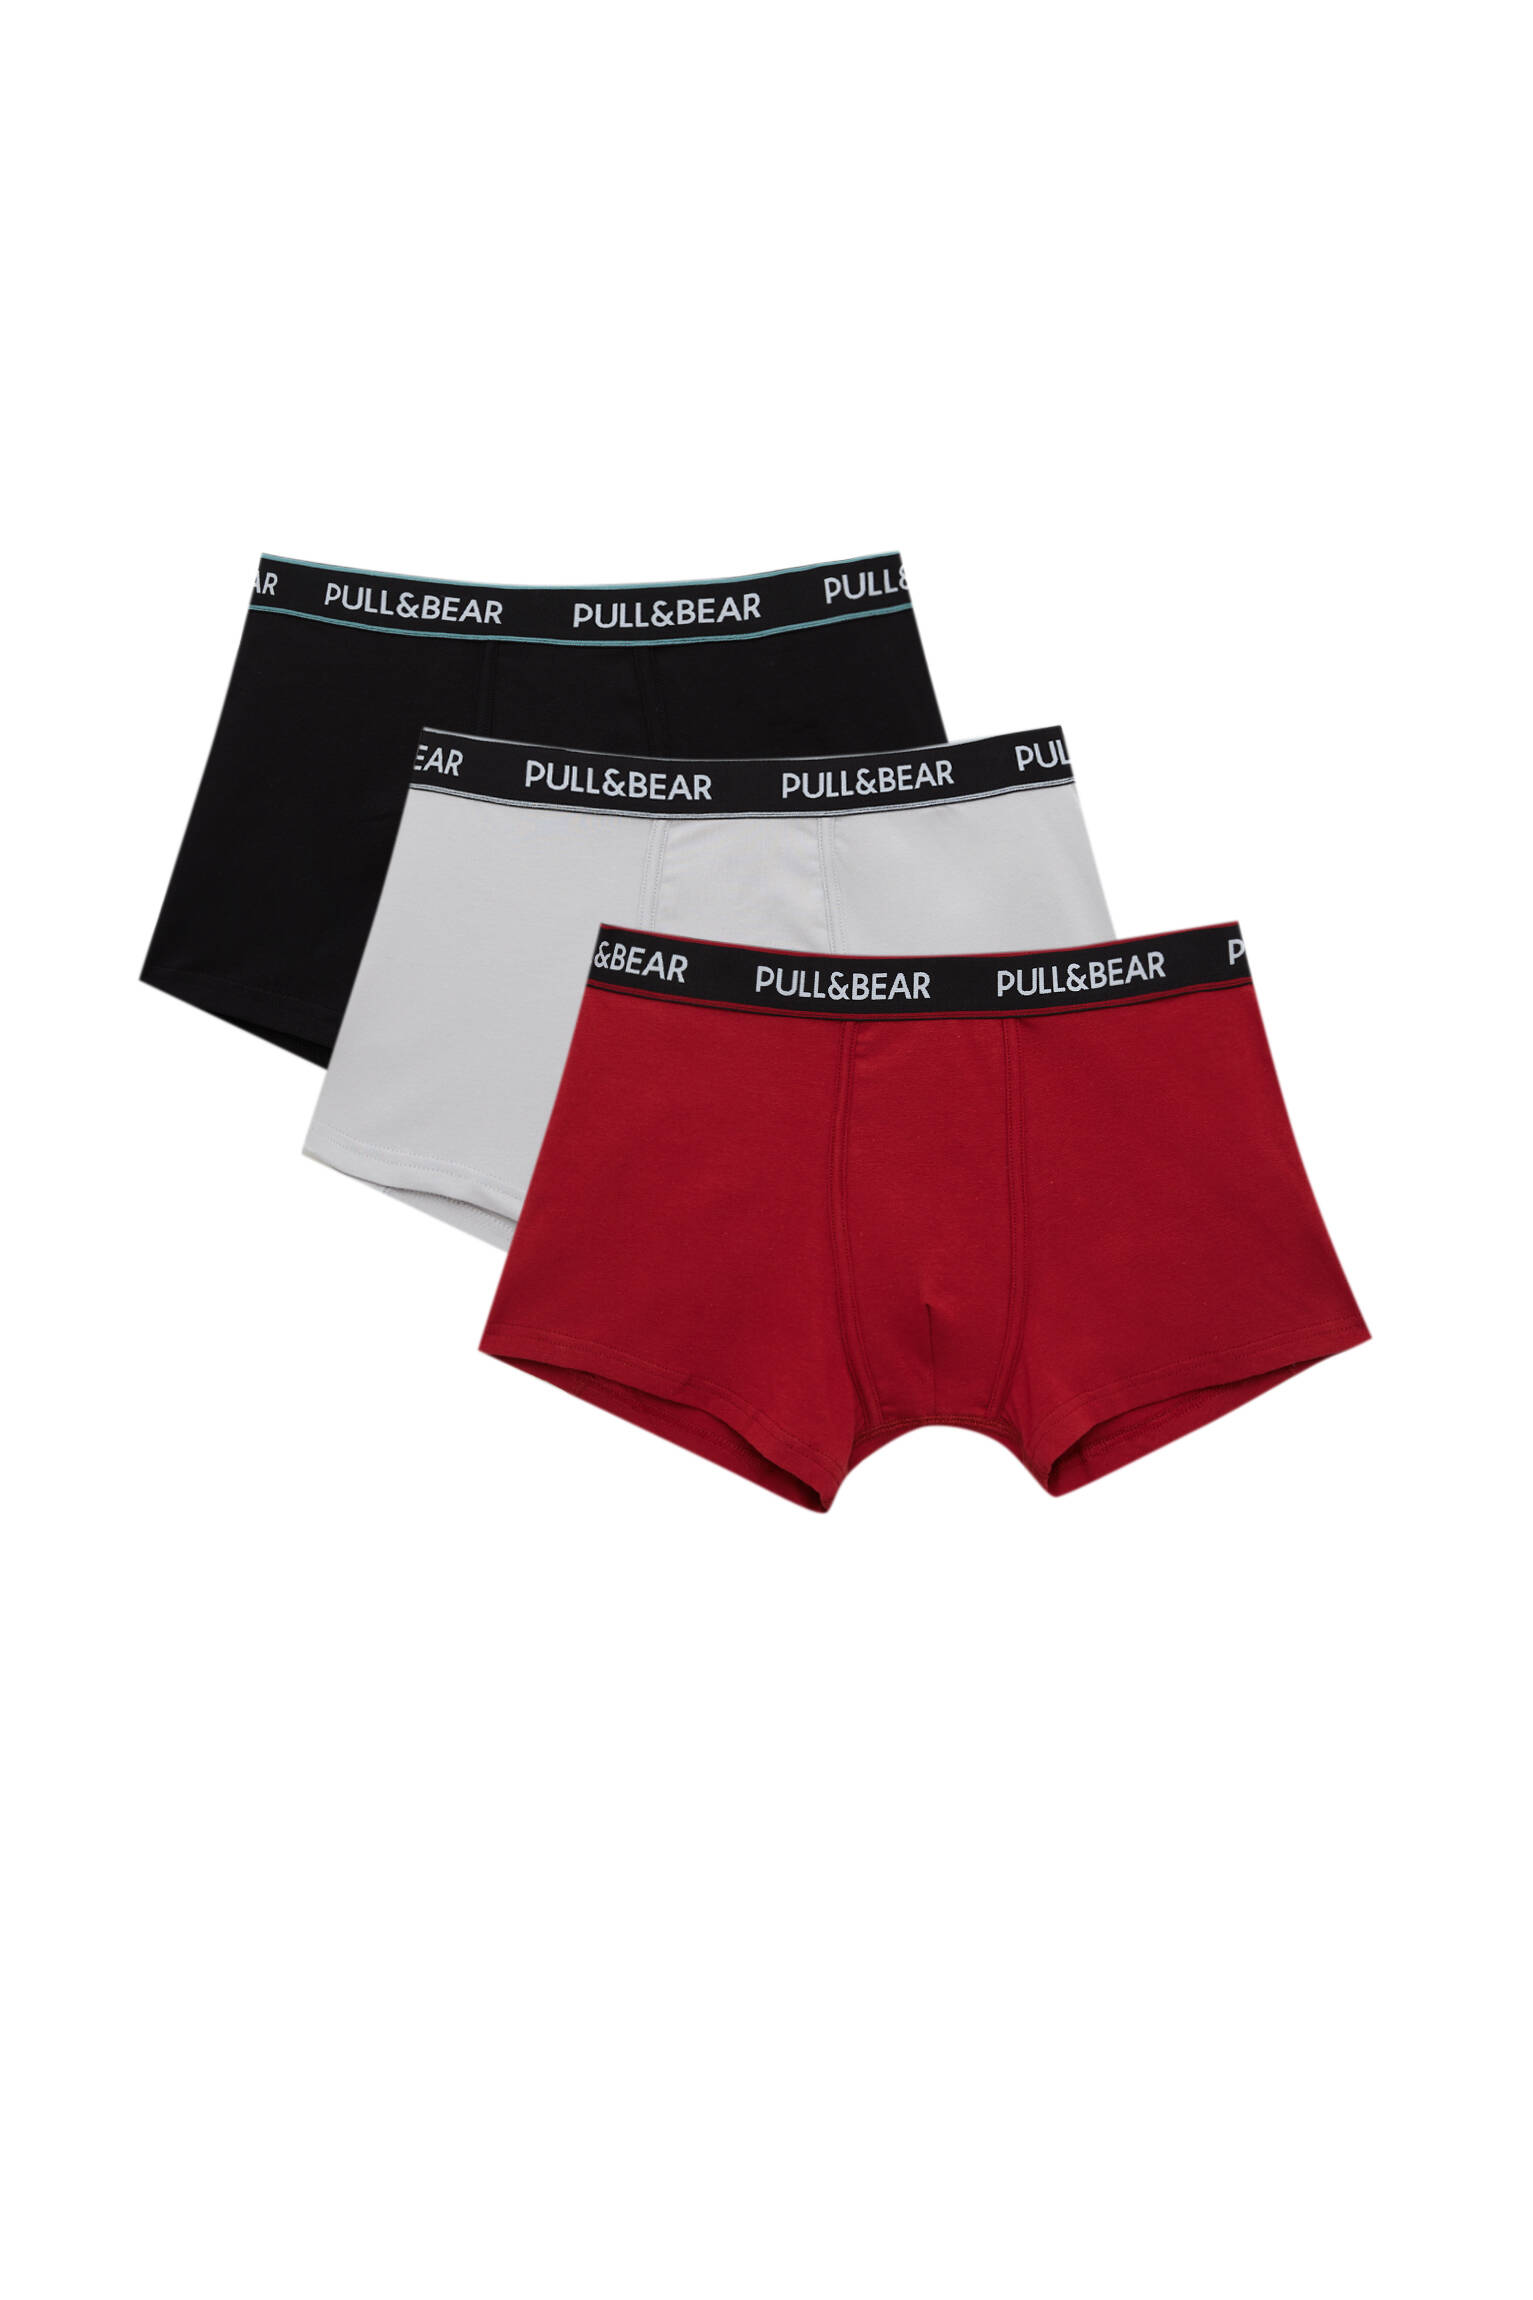 Pull&bear Homme Pack De Trois Boxers De Différentes Couleurs, à Taille élastique, Rayures Contrastantes Et Logo. Divers M